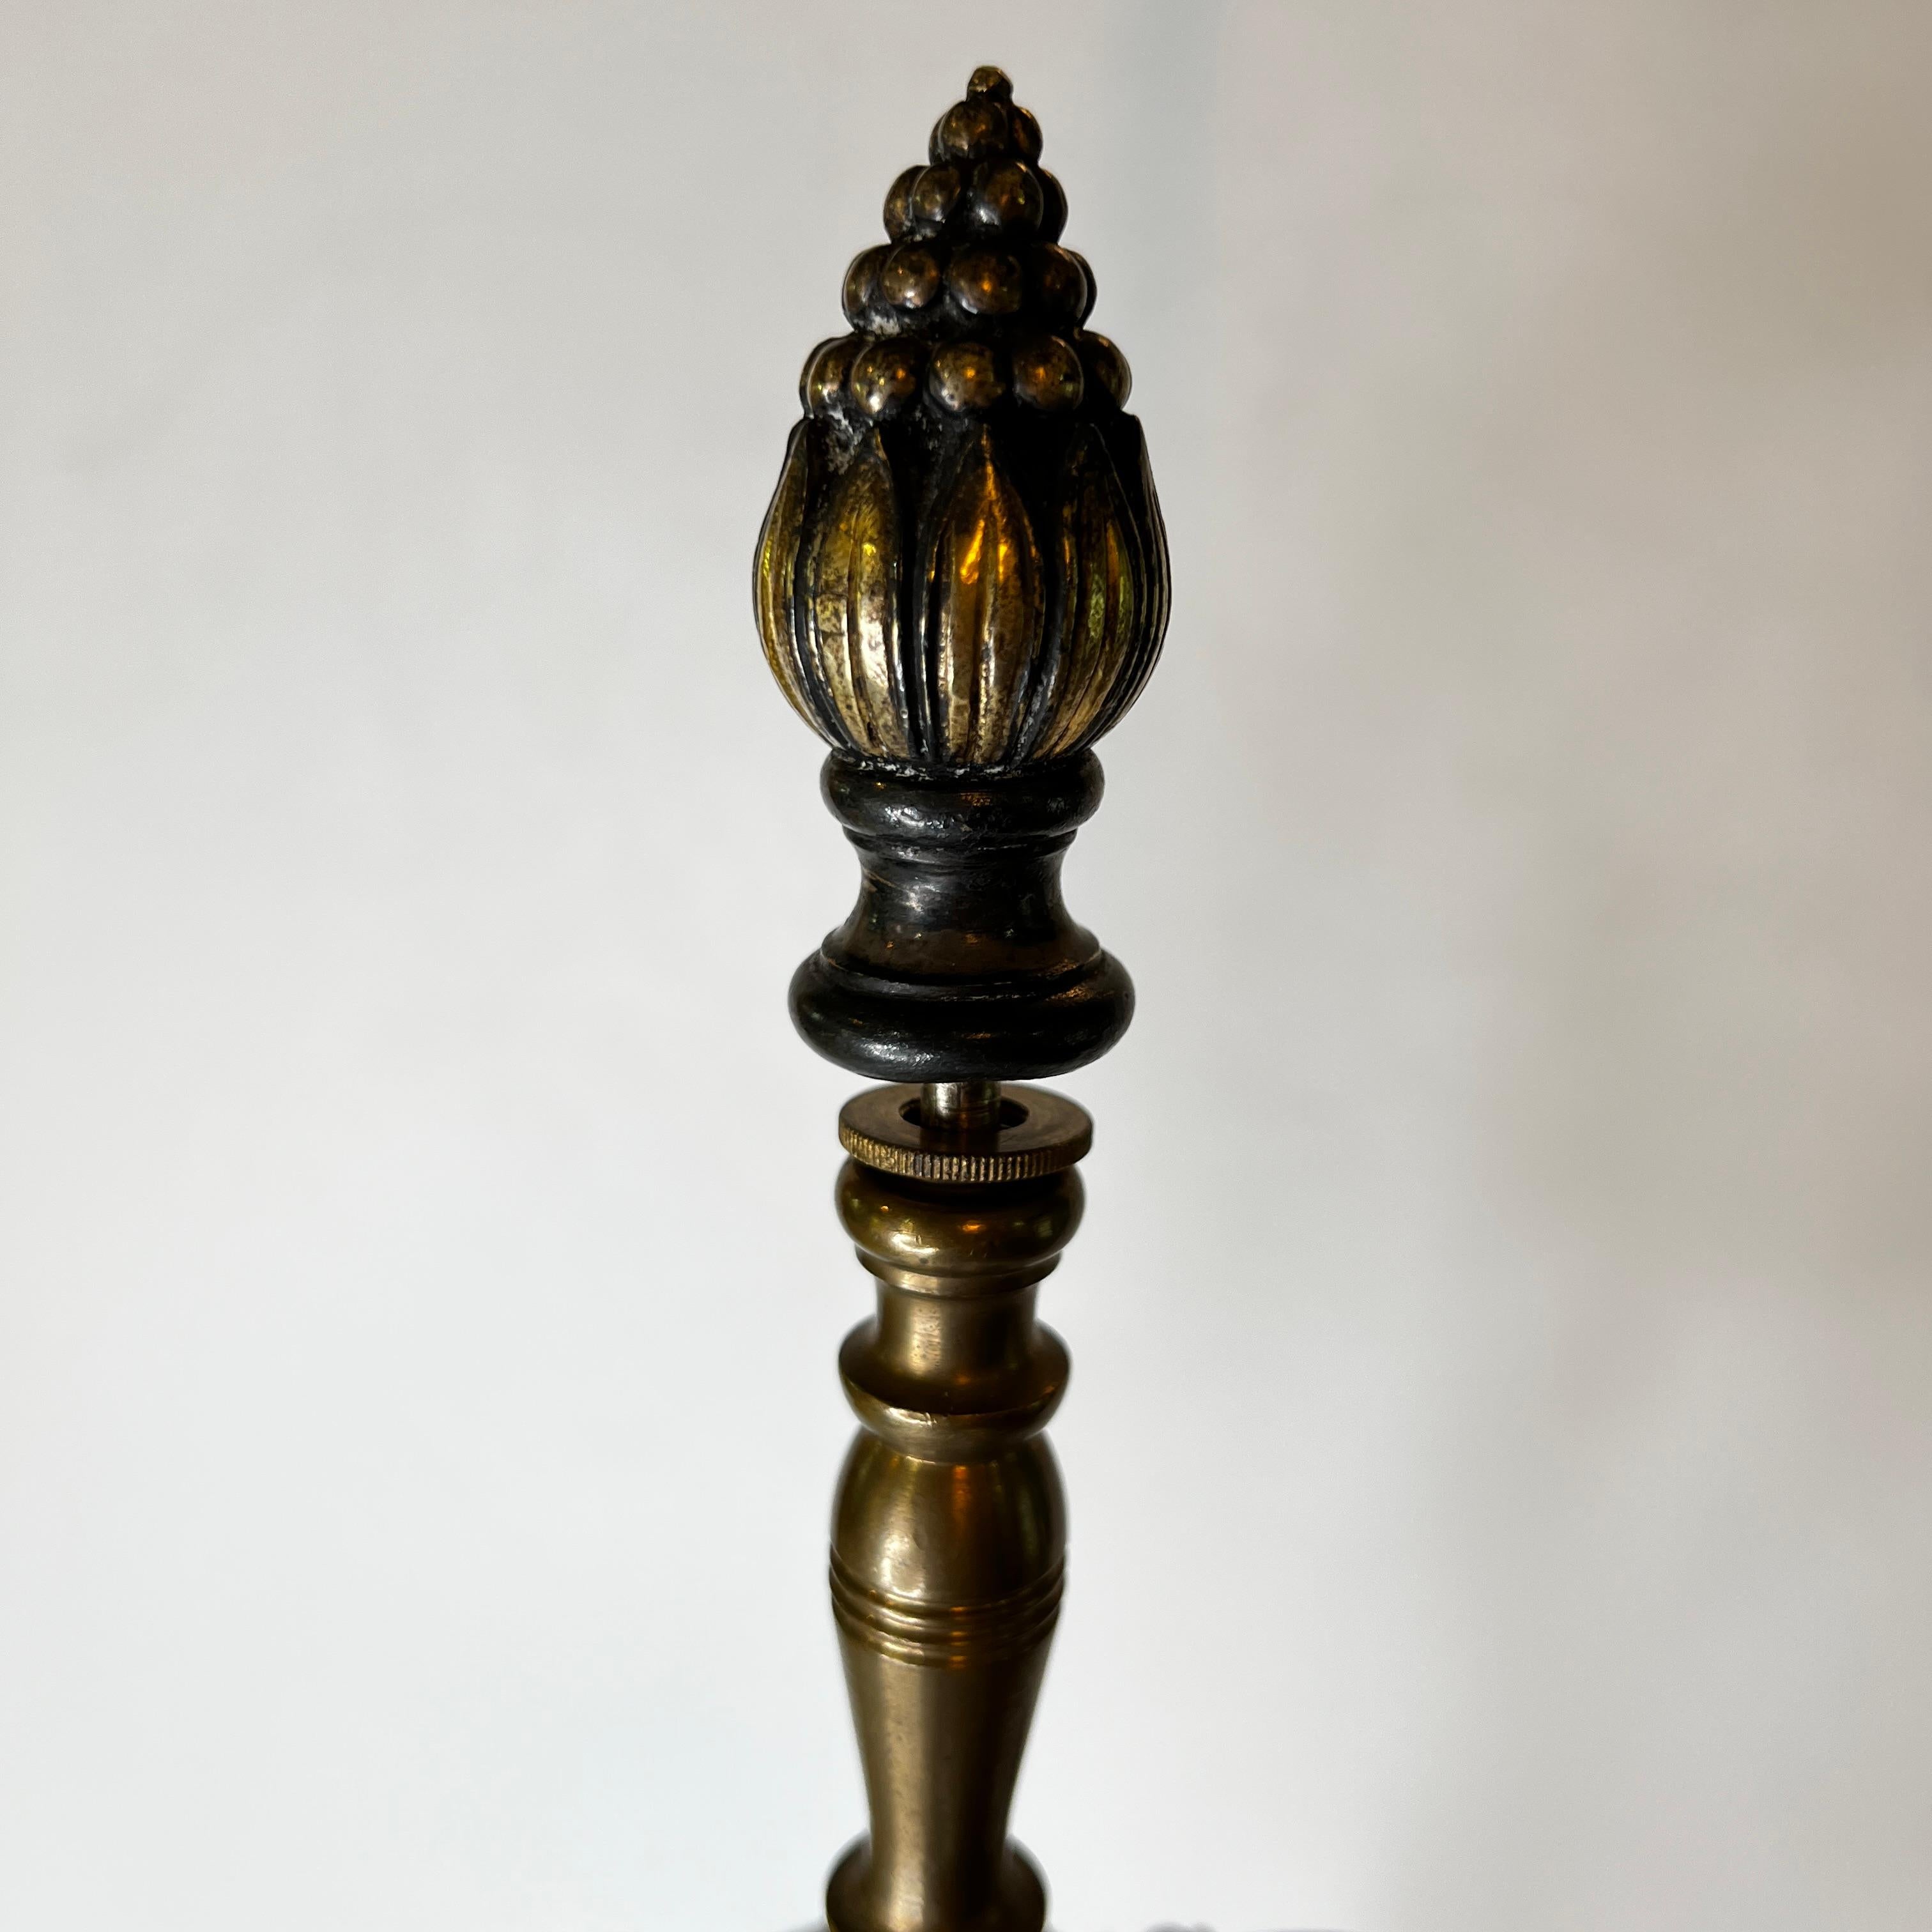 Notre lampe de table en métal argenté avec des motifs dorés de style renaissance provient d'Edward F. Caldwell, vers 1910. 

Elle possède son épi de faîtage d'origine et présente des motifs néoclassiques en relief, notamment des rinceaux, des